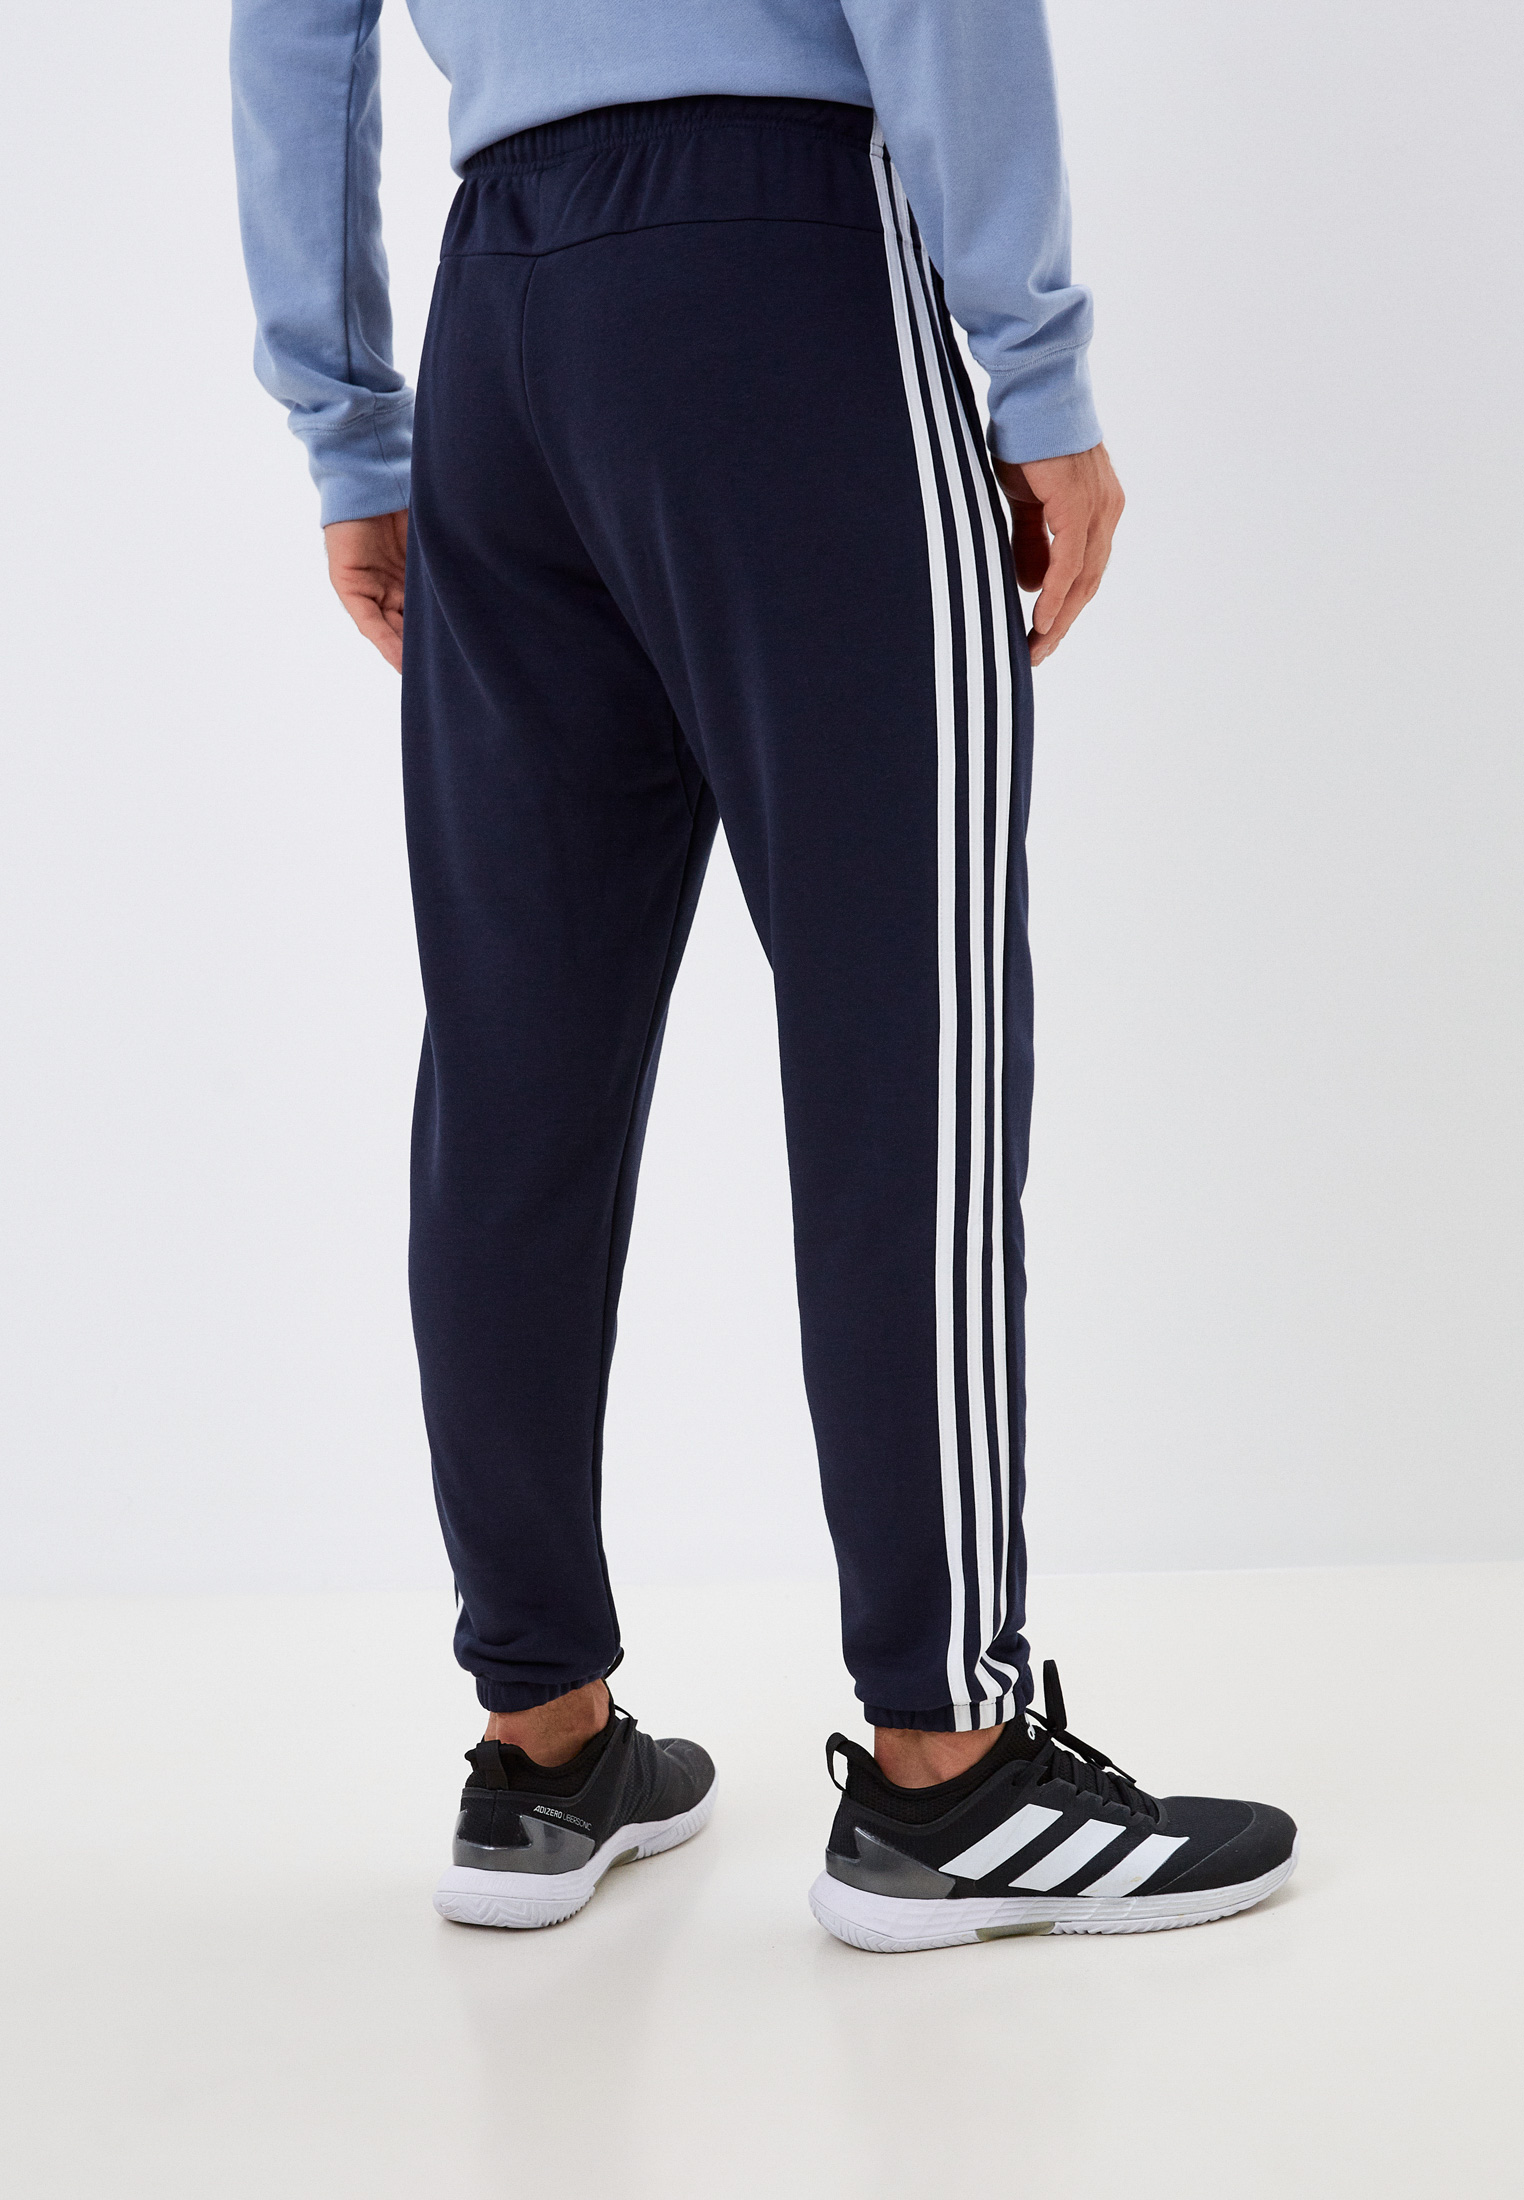 Мужские спортивные брюки Adidas (Адидас) DU0460 купить за 4999 руб.